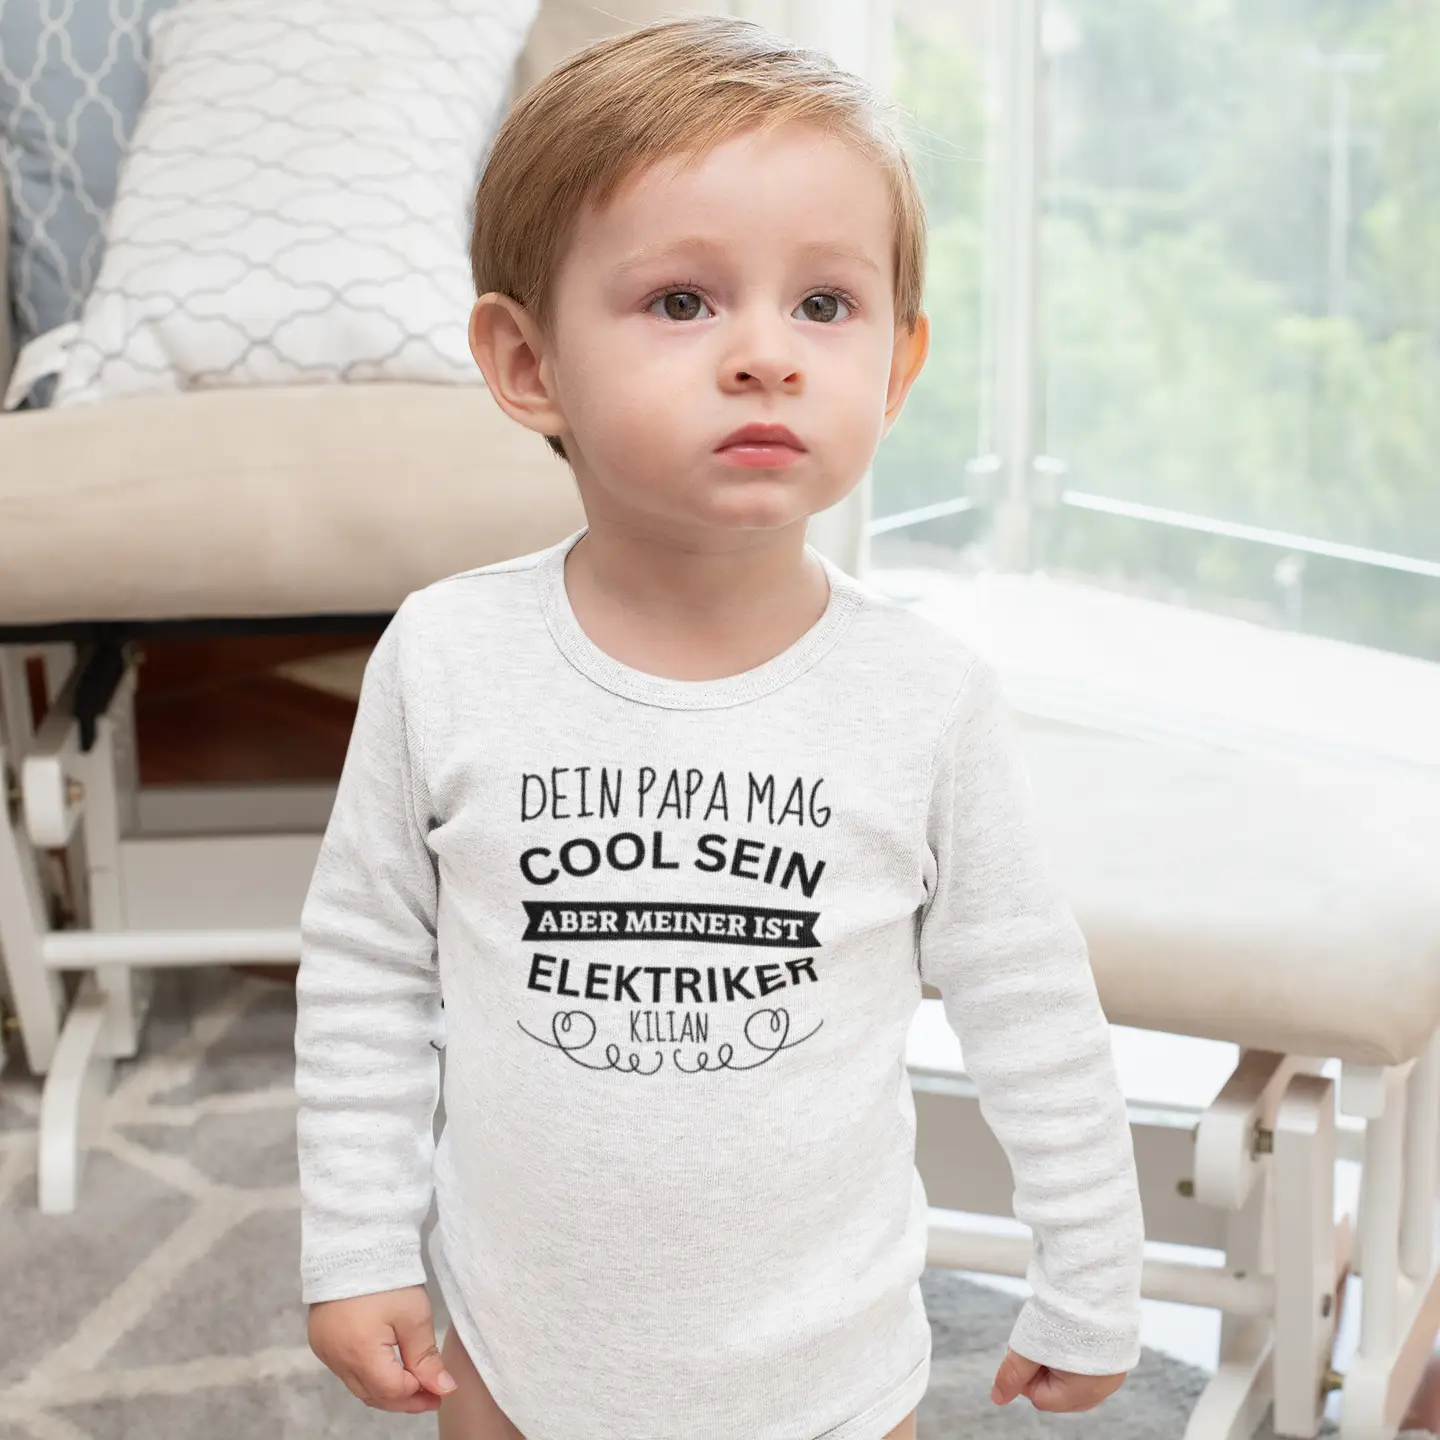 Baby Bodysuit “Dein Papa mag cool sein”